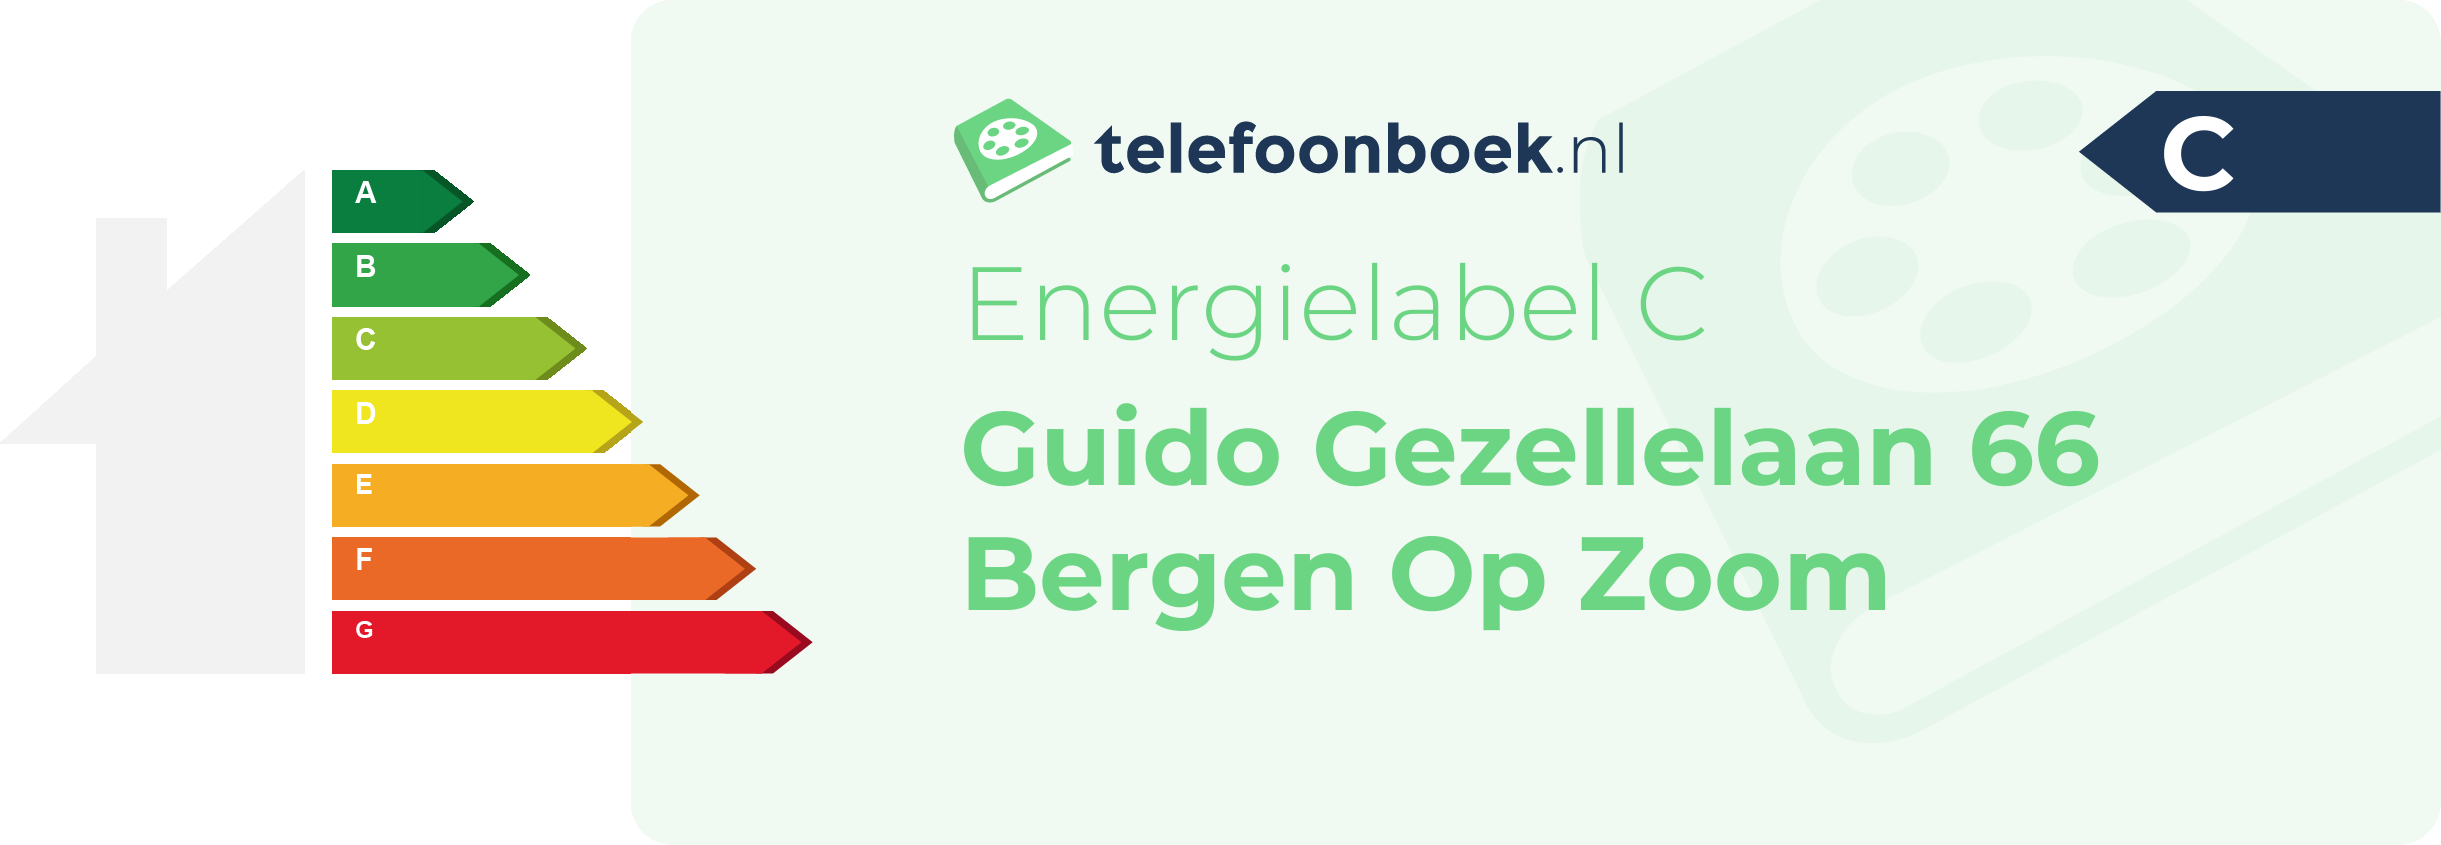 Energielabel Guido Gezellelaan 66 Bergen Op Zoom